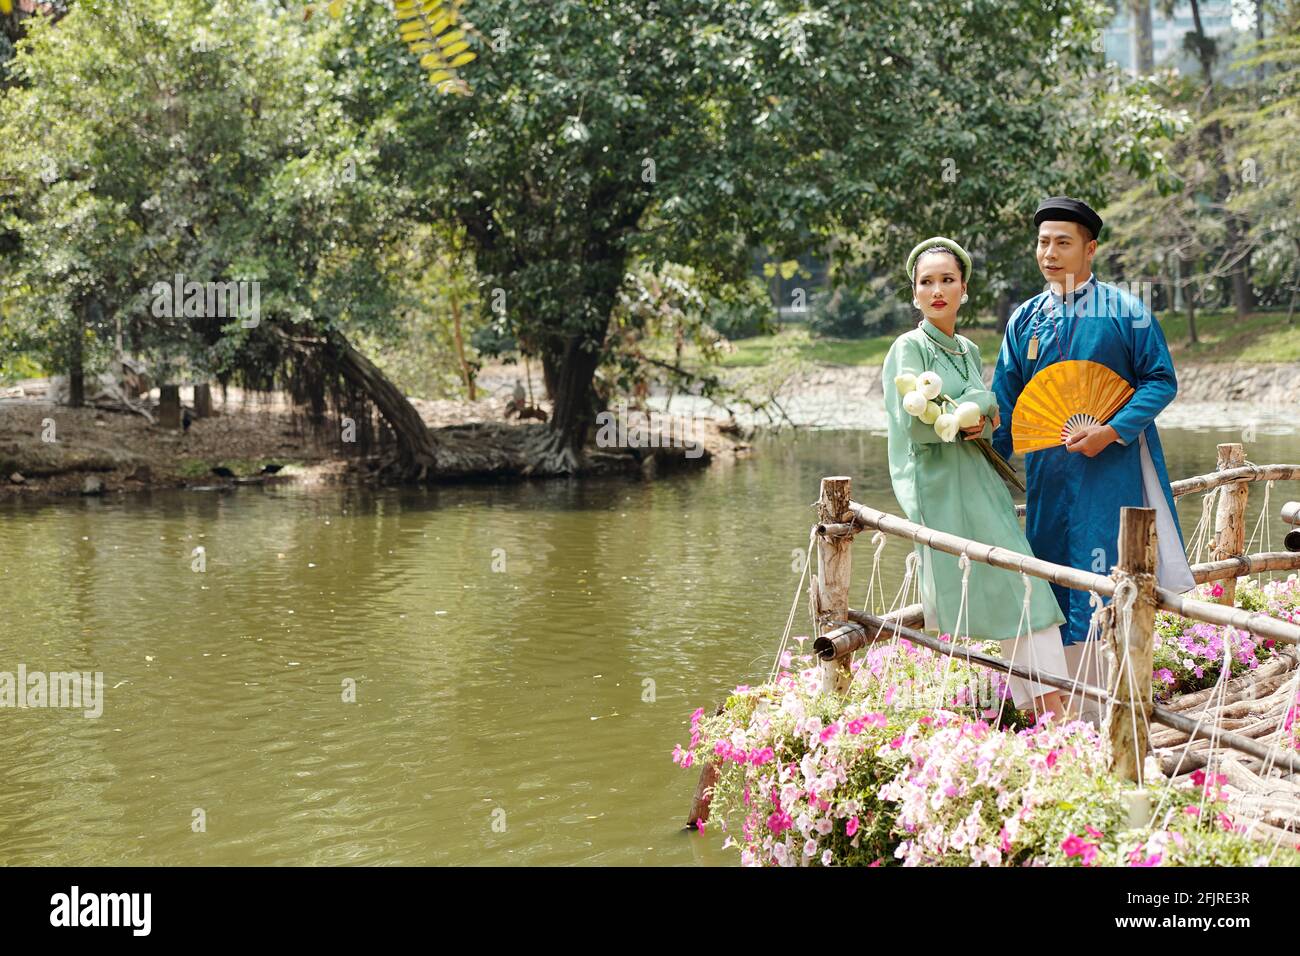 Vietnamesische Braut und Bräutigam in traditionellen Ao dai Kleidern und Kopfbedeckung namens khan dong, die am Teich im Stadtpark steht Stockfoto